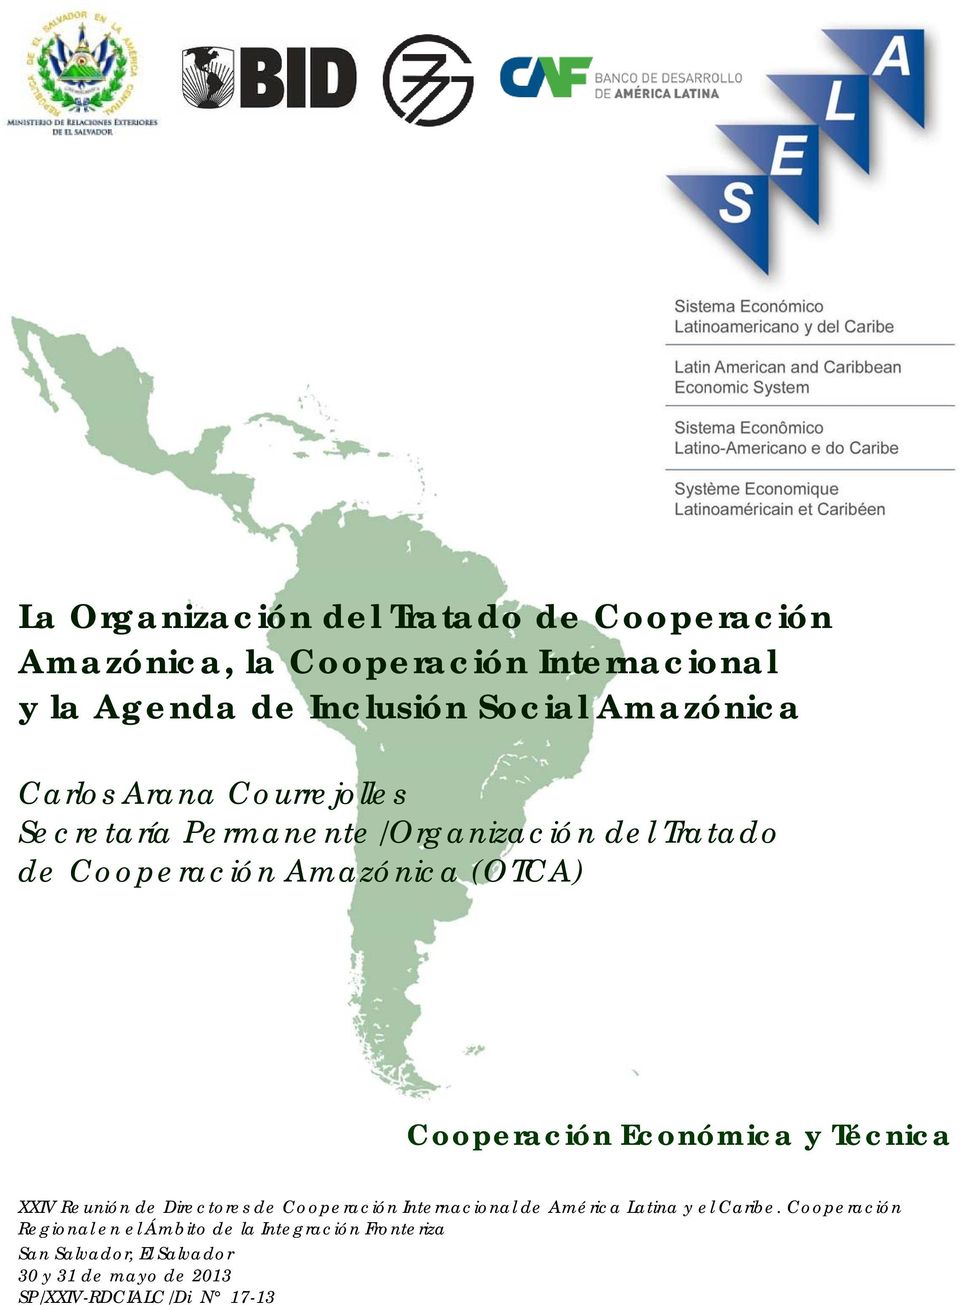 Cooperación Económica y Técnica XXIV Reunión de Directores de Cooperación Internacional de América Latina y el Caribe.